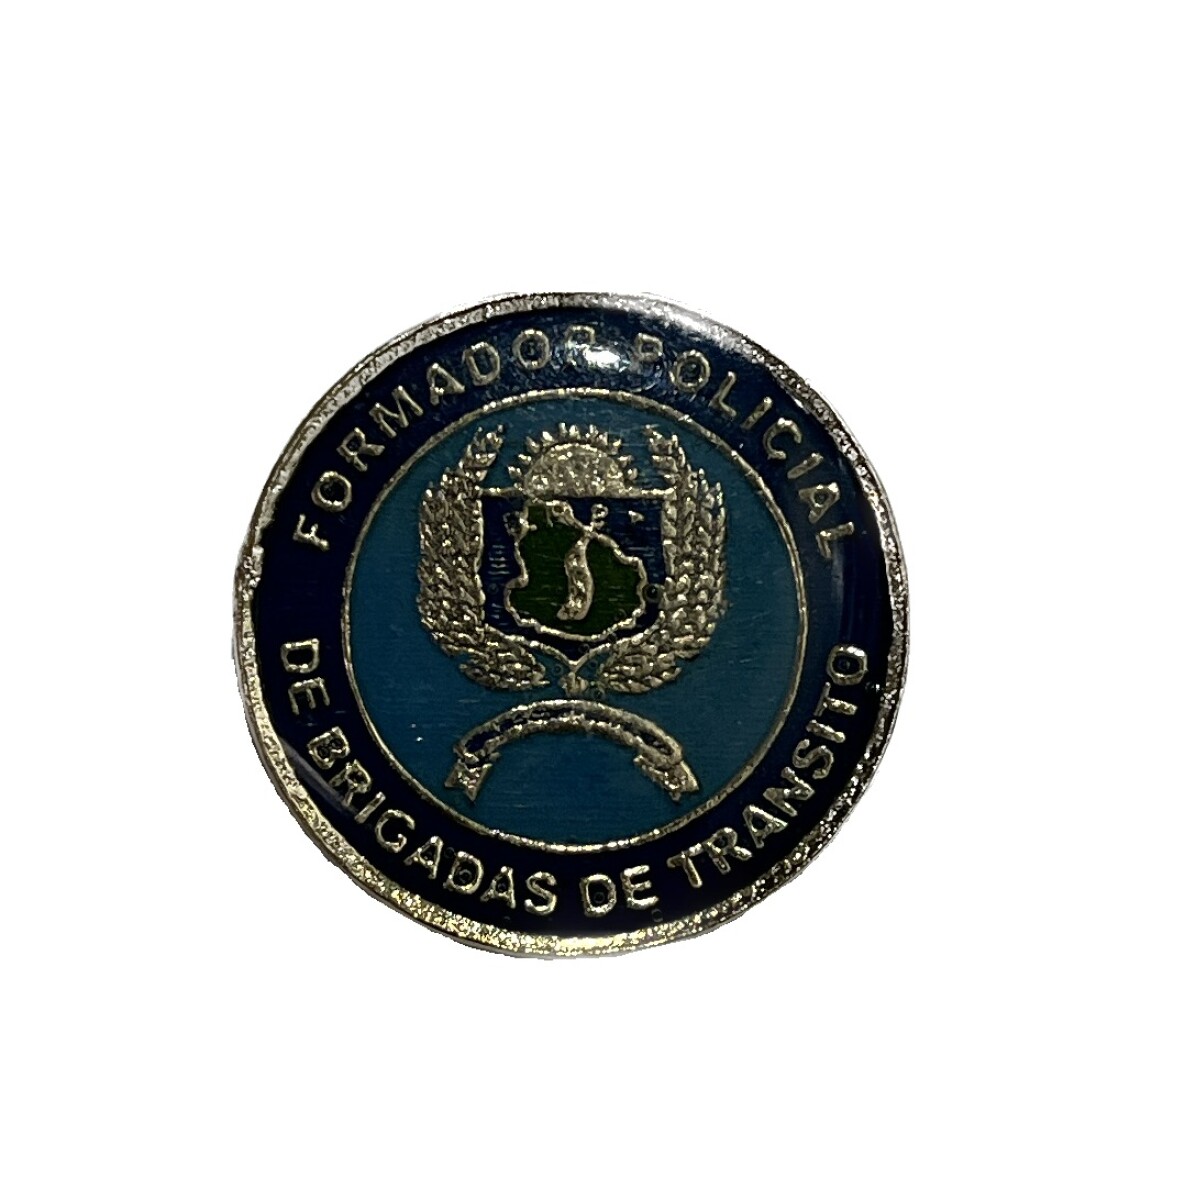 Pin metálico Formador Policial - Brigada de Tránsito 